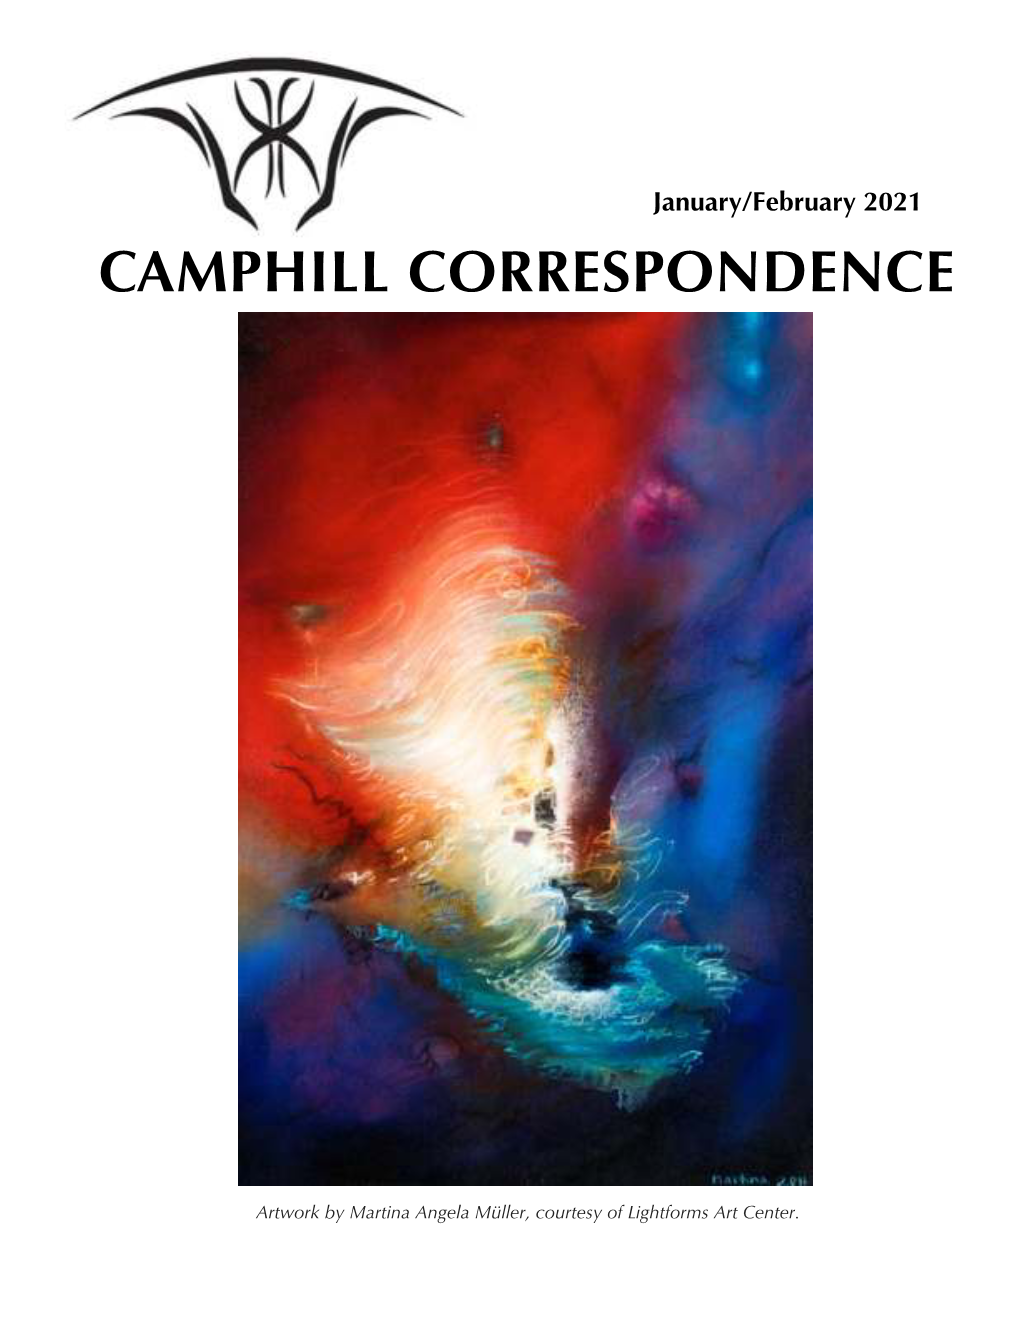 Camphill Correspondence January/February 2021